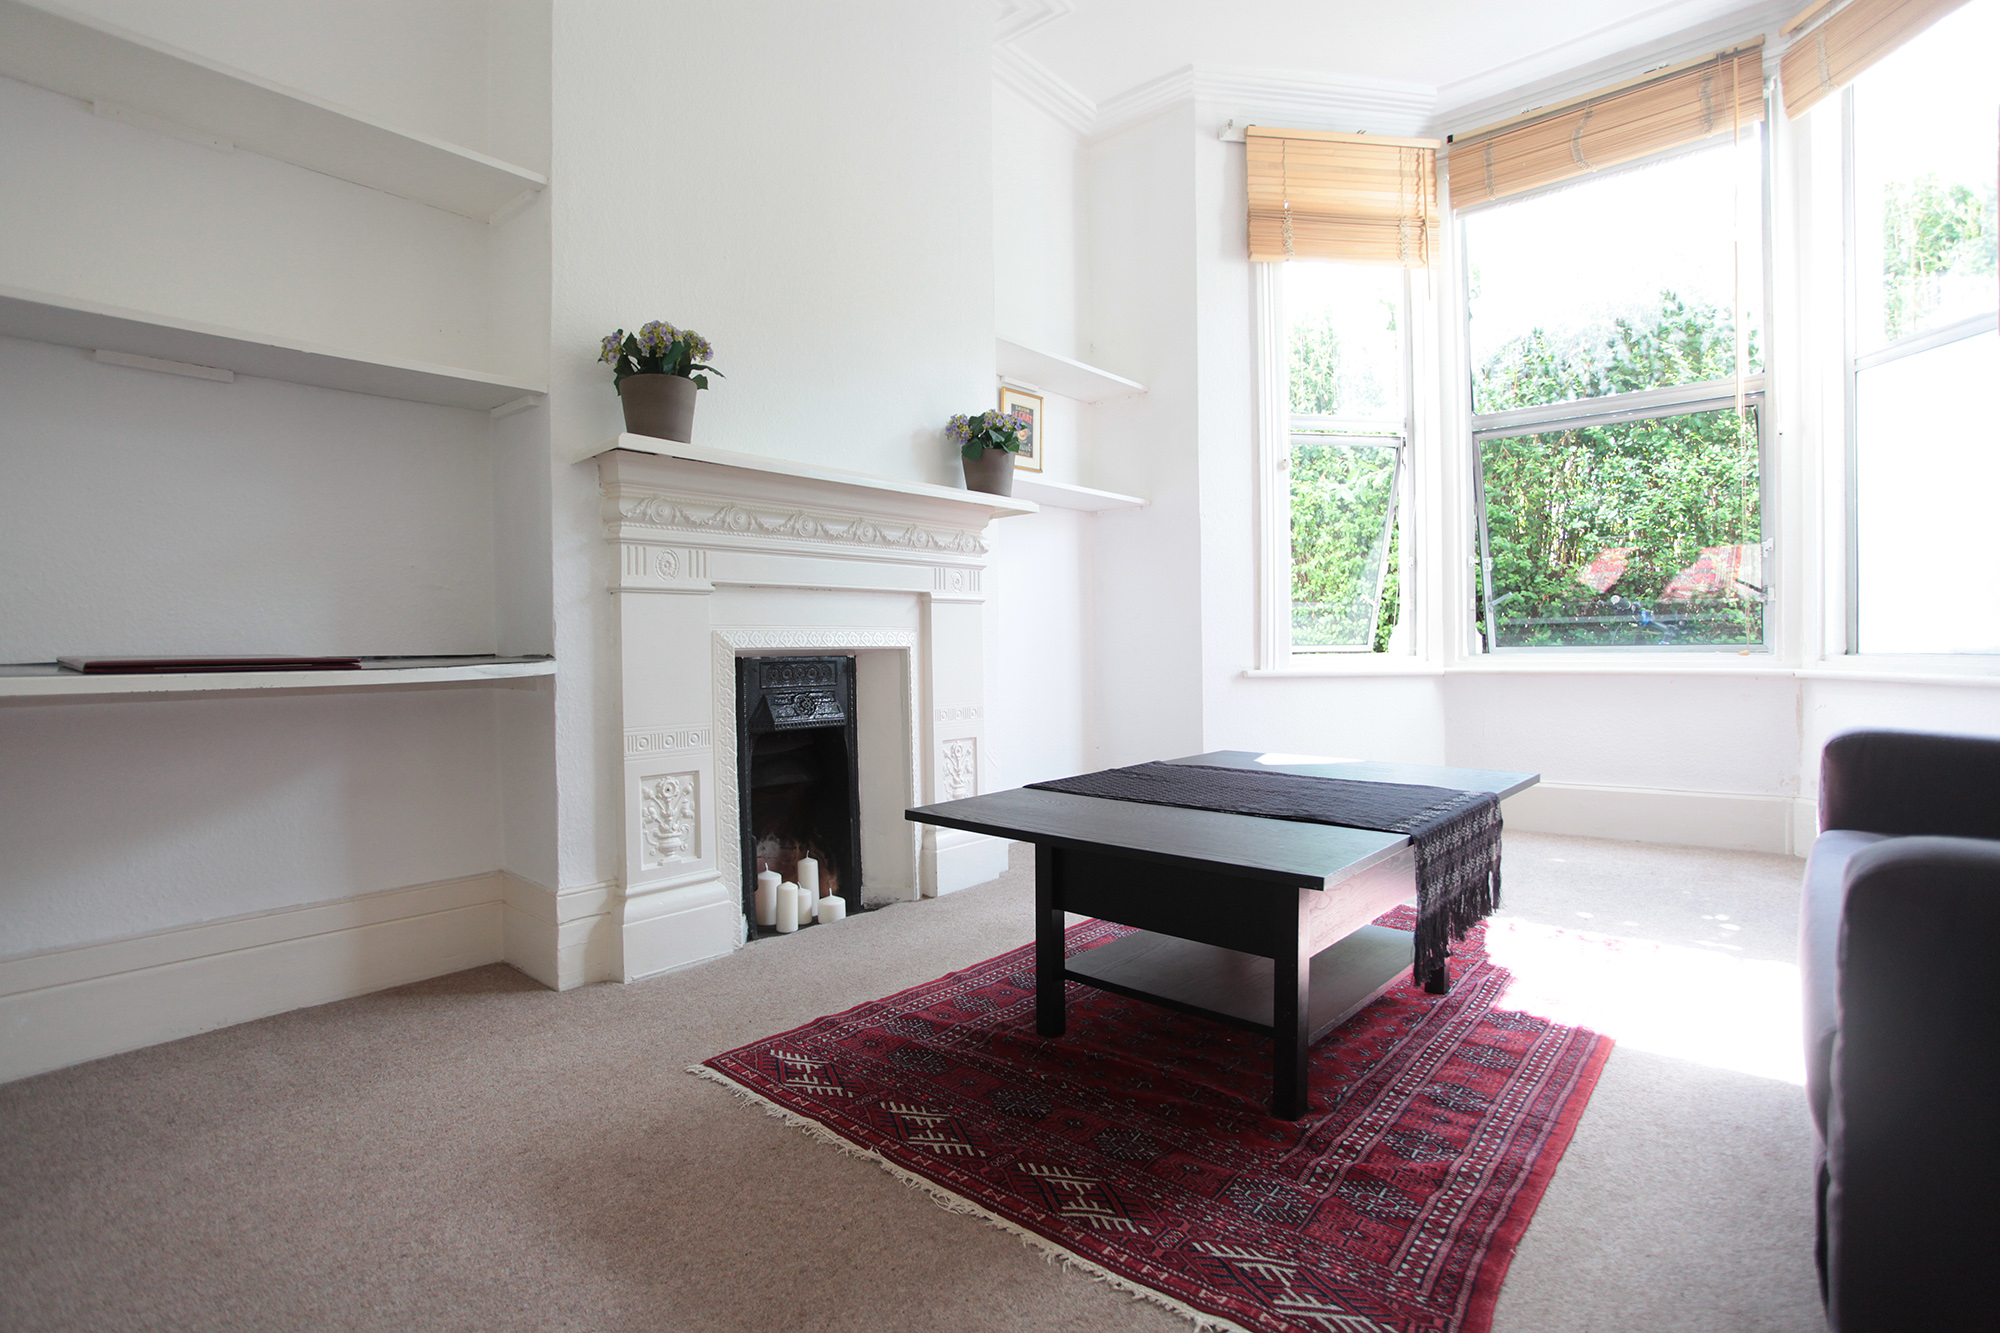 1 Bedroom Flat To Rent In Ferndale Road Sw4 London